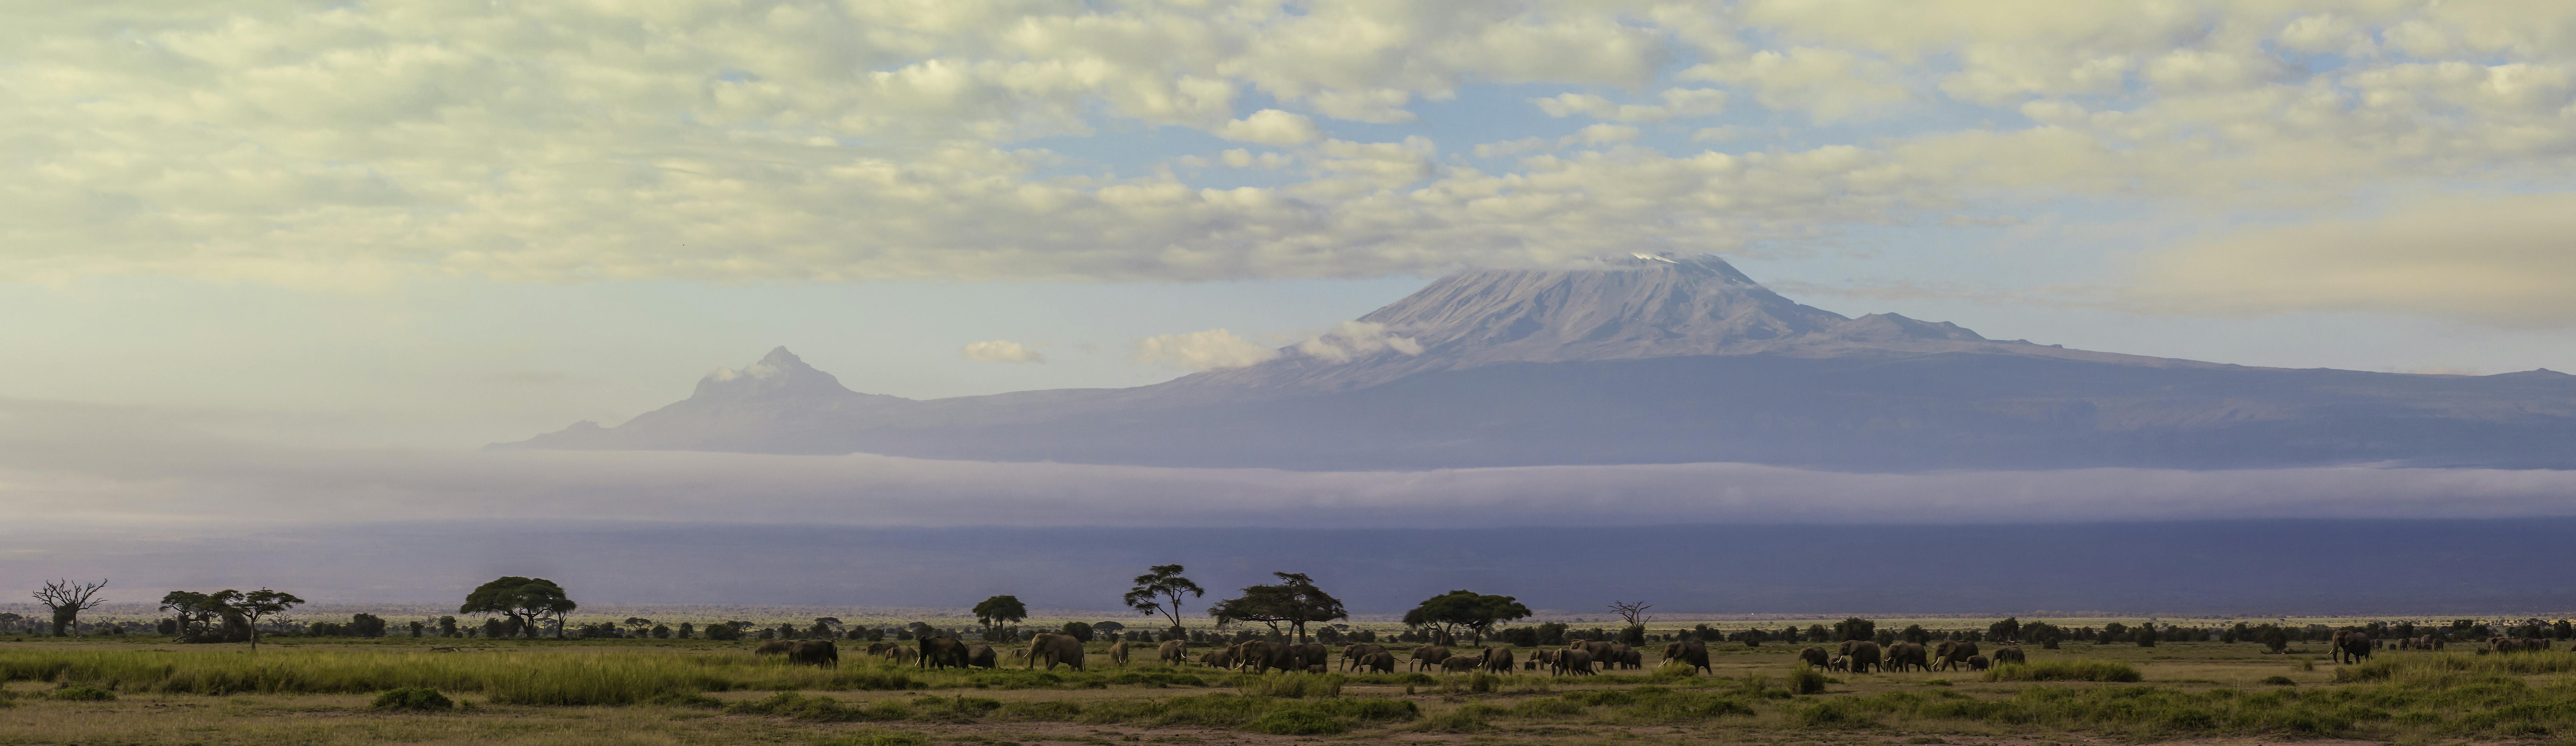 Tageswanderung auf den Kilimandscharo von Arusha aus